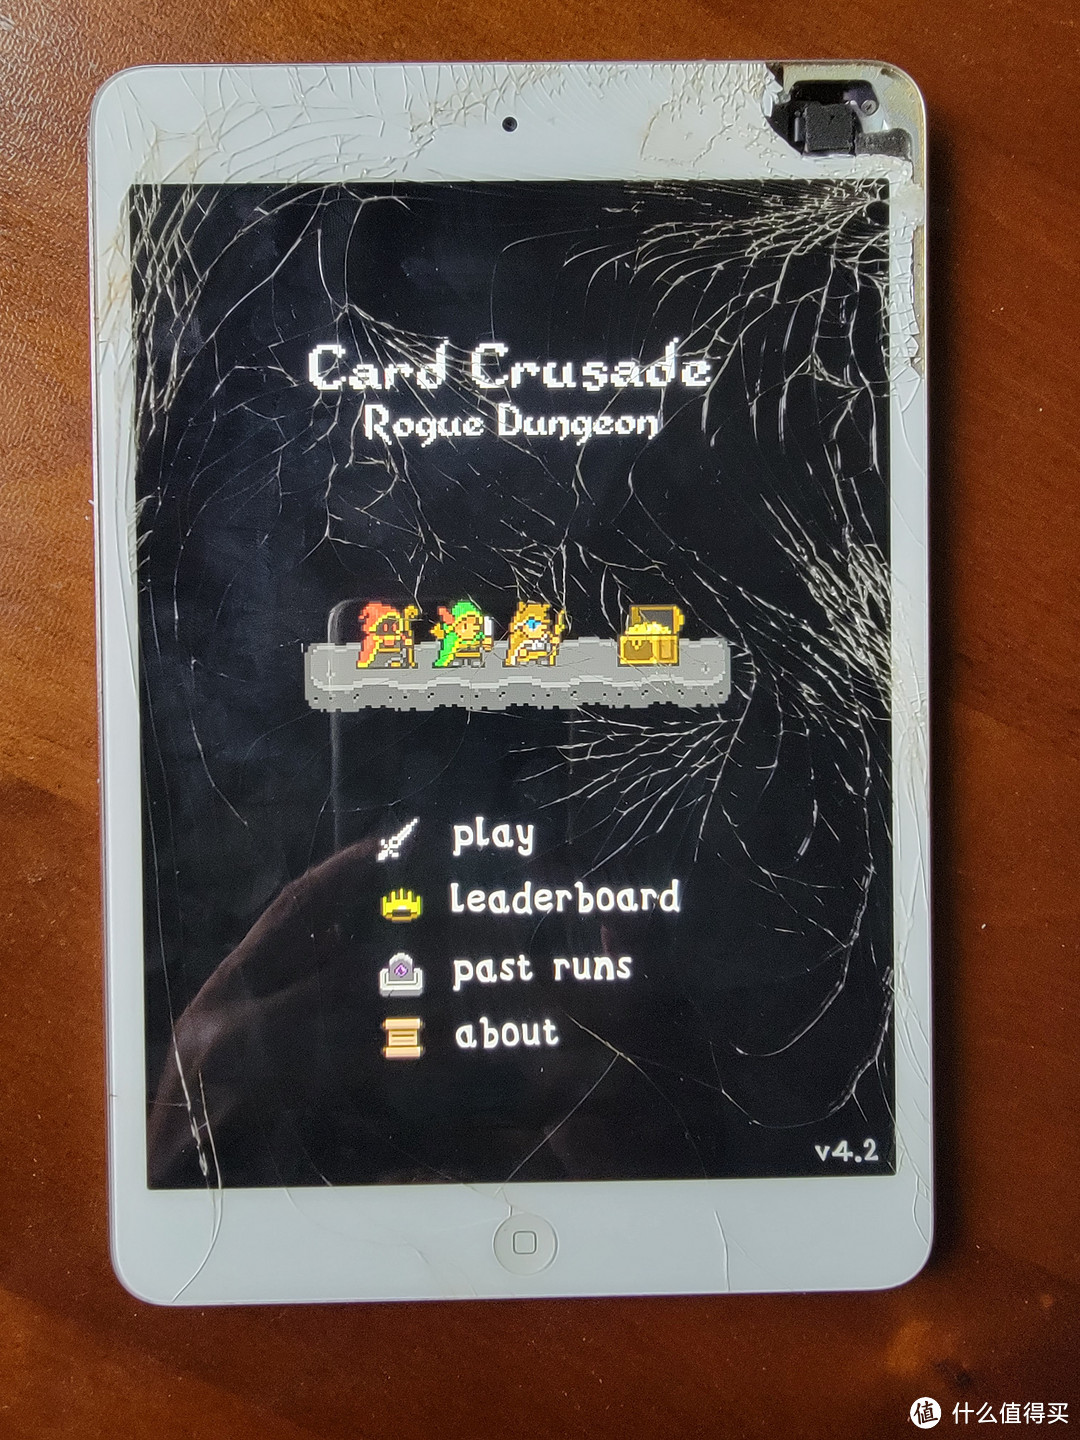 card crusade